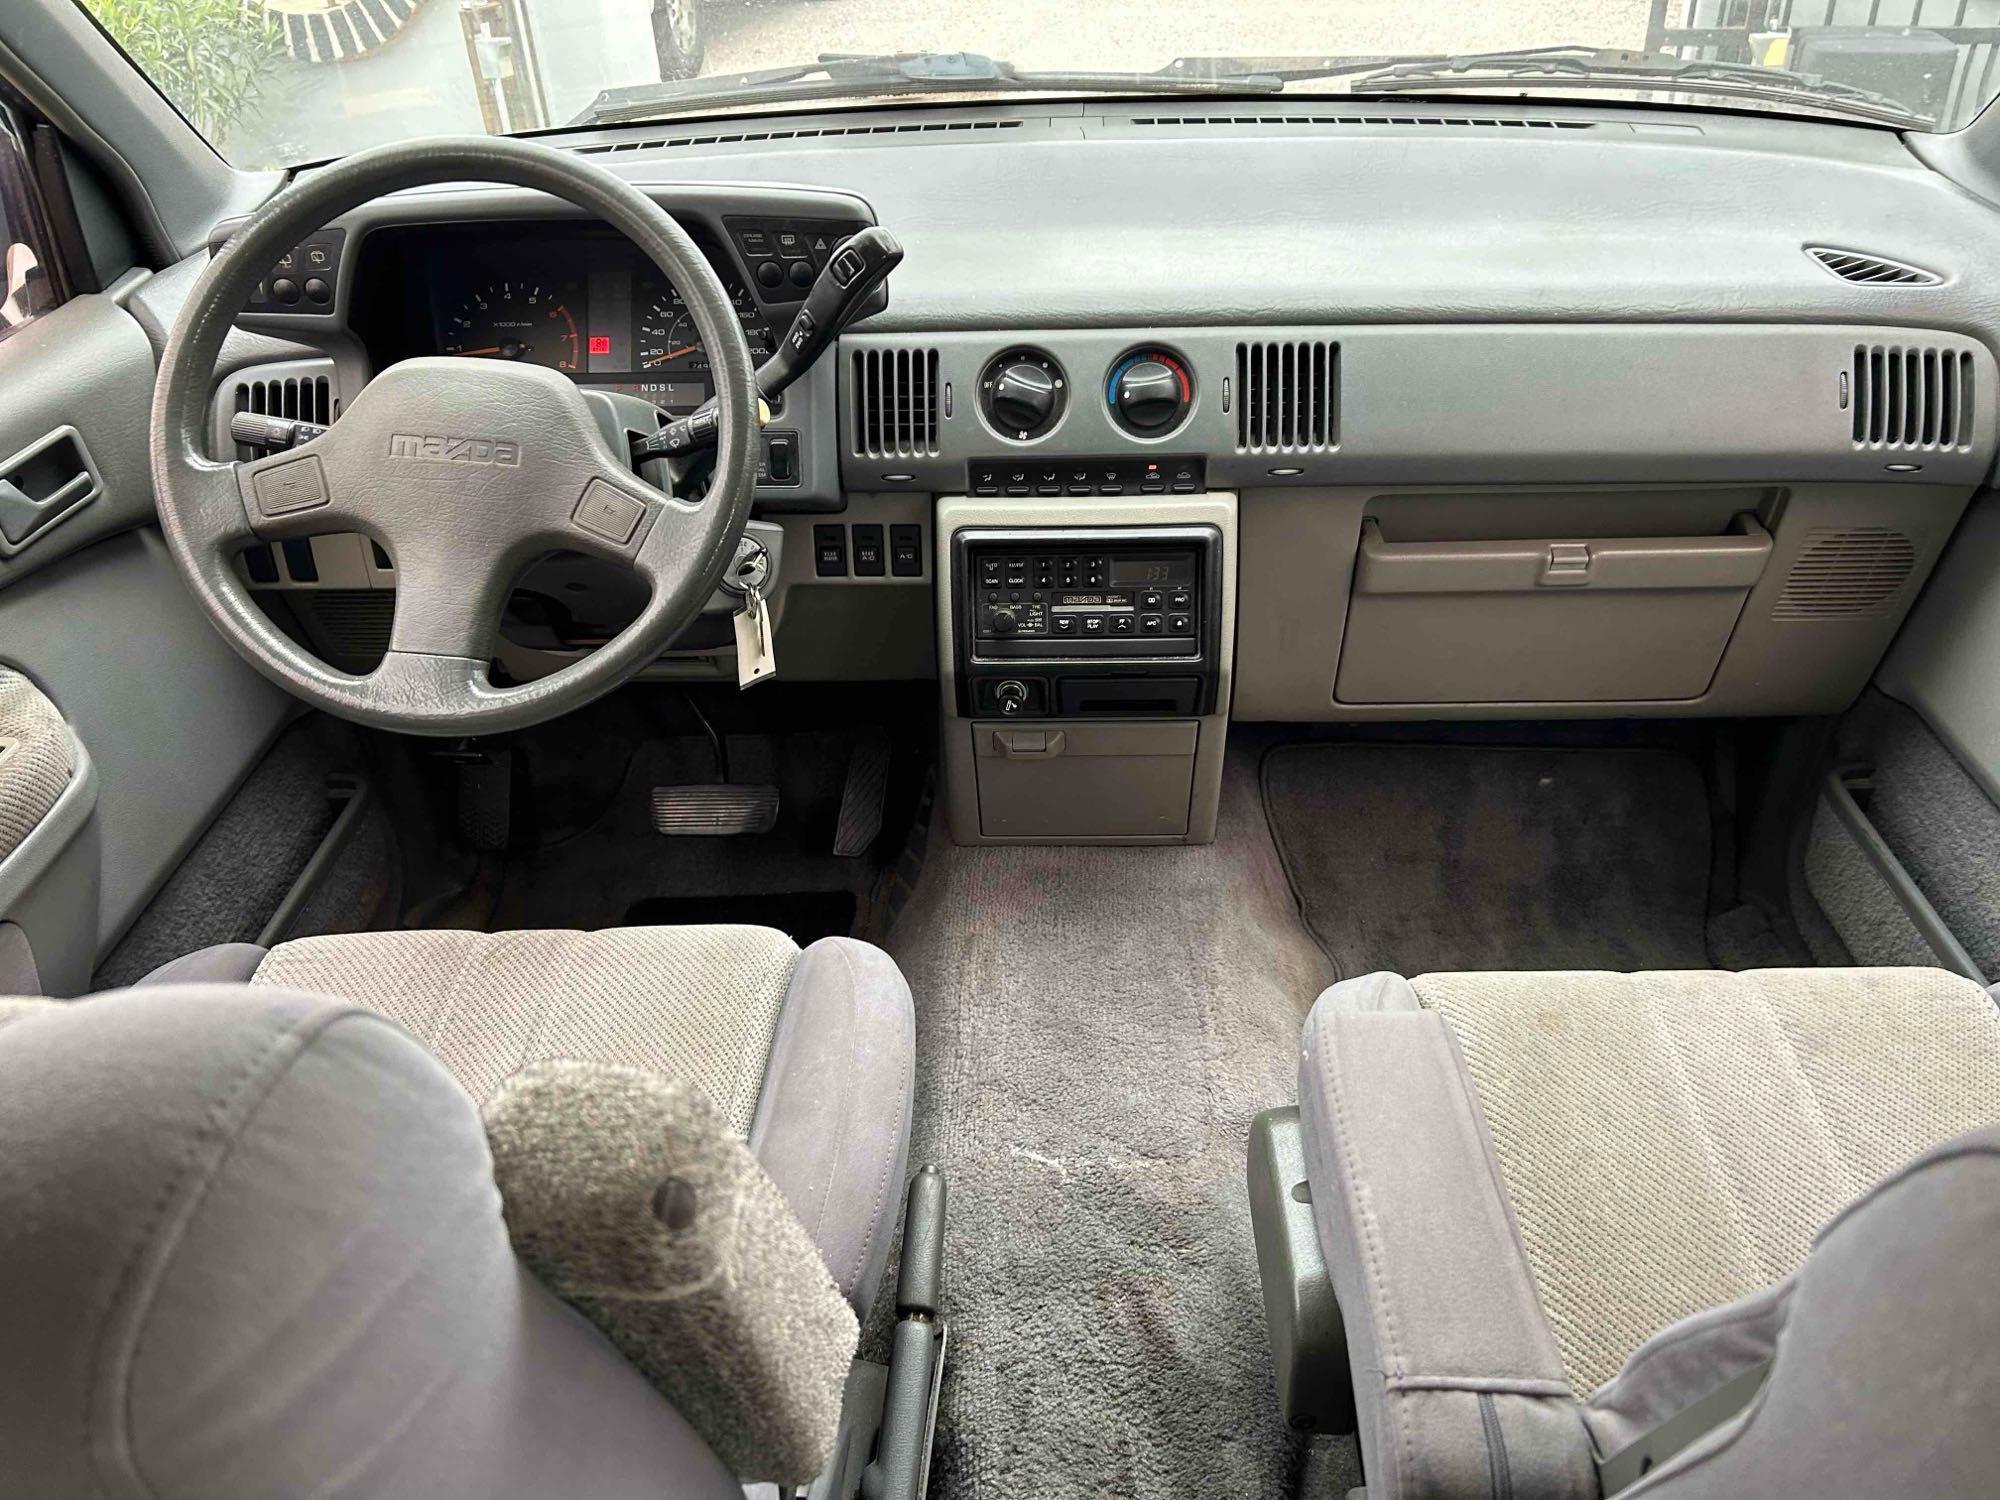 1992 Mazda MPV Van